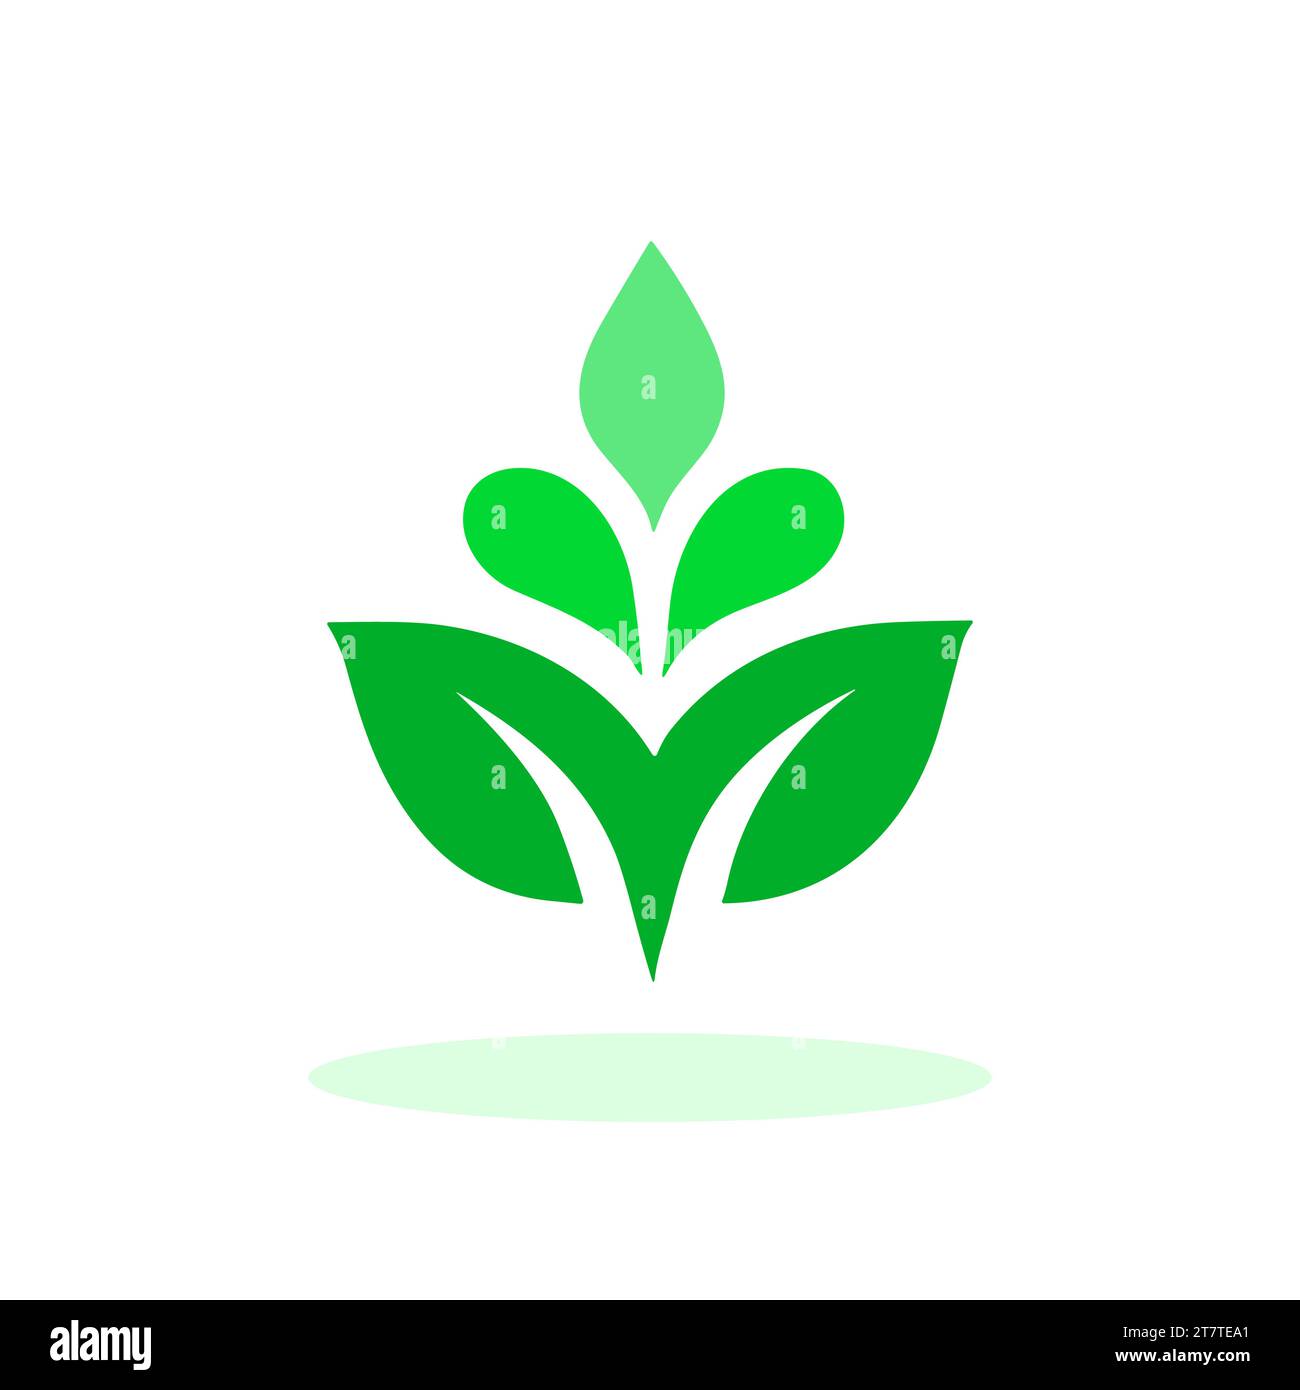 Grünes Pflanzensymbol. Grüne Pflanze mit drei Blättern. Konzept von Wachstum, Ökologie und Natur. Vektorabbildung Stock Vektor